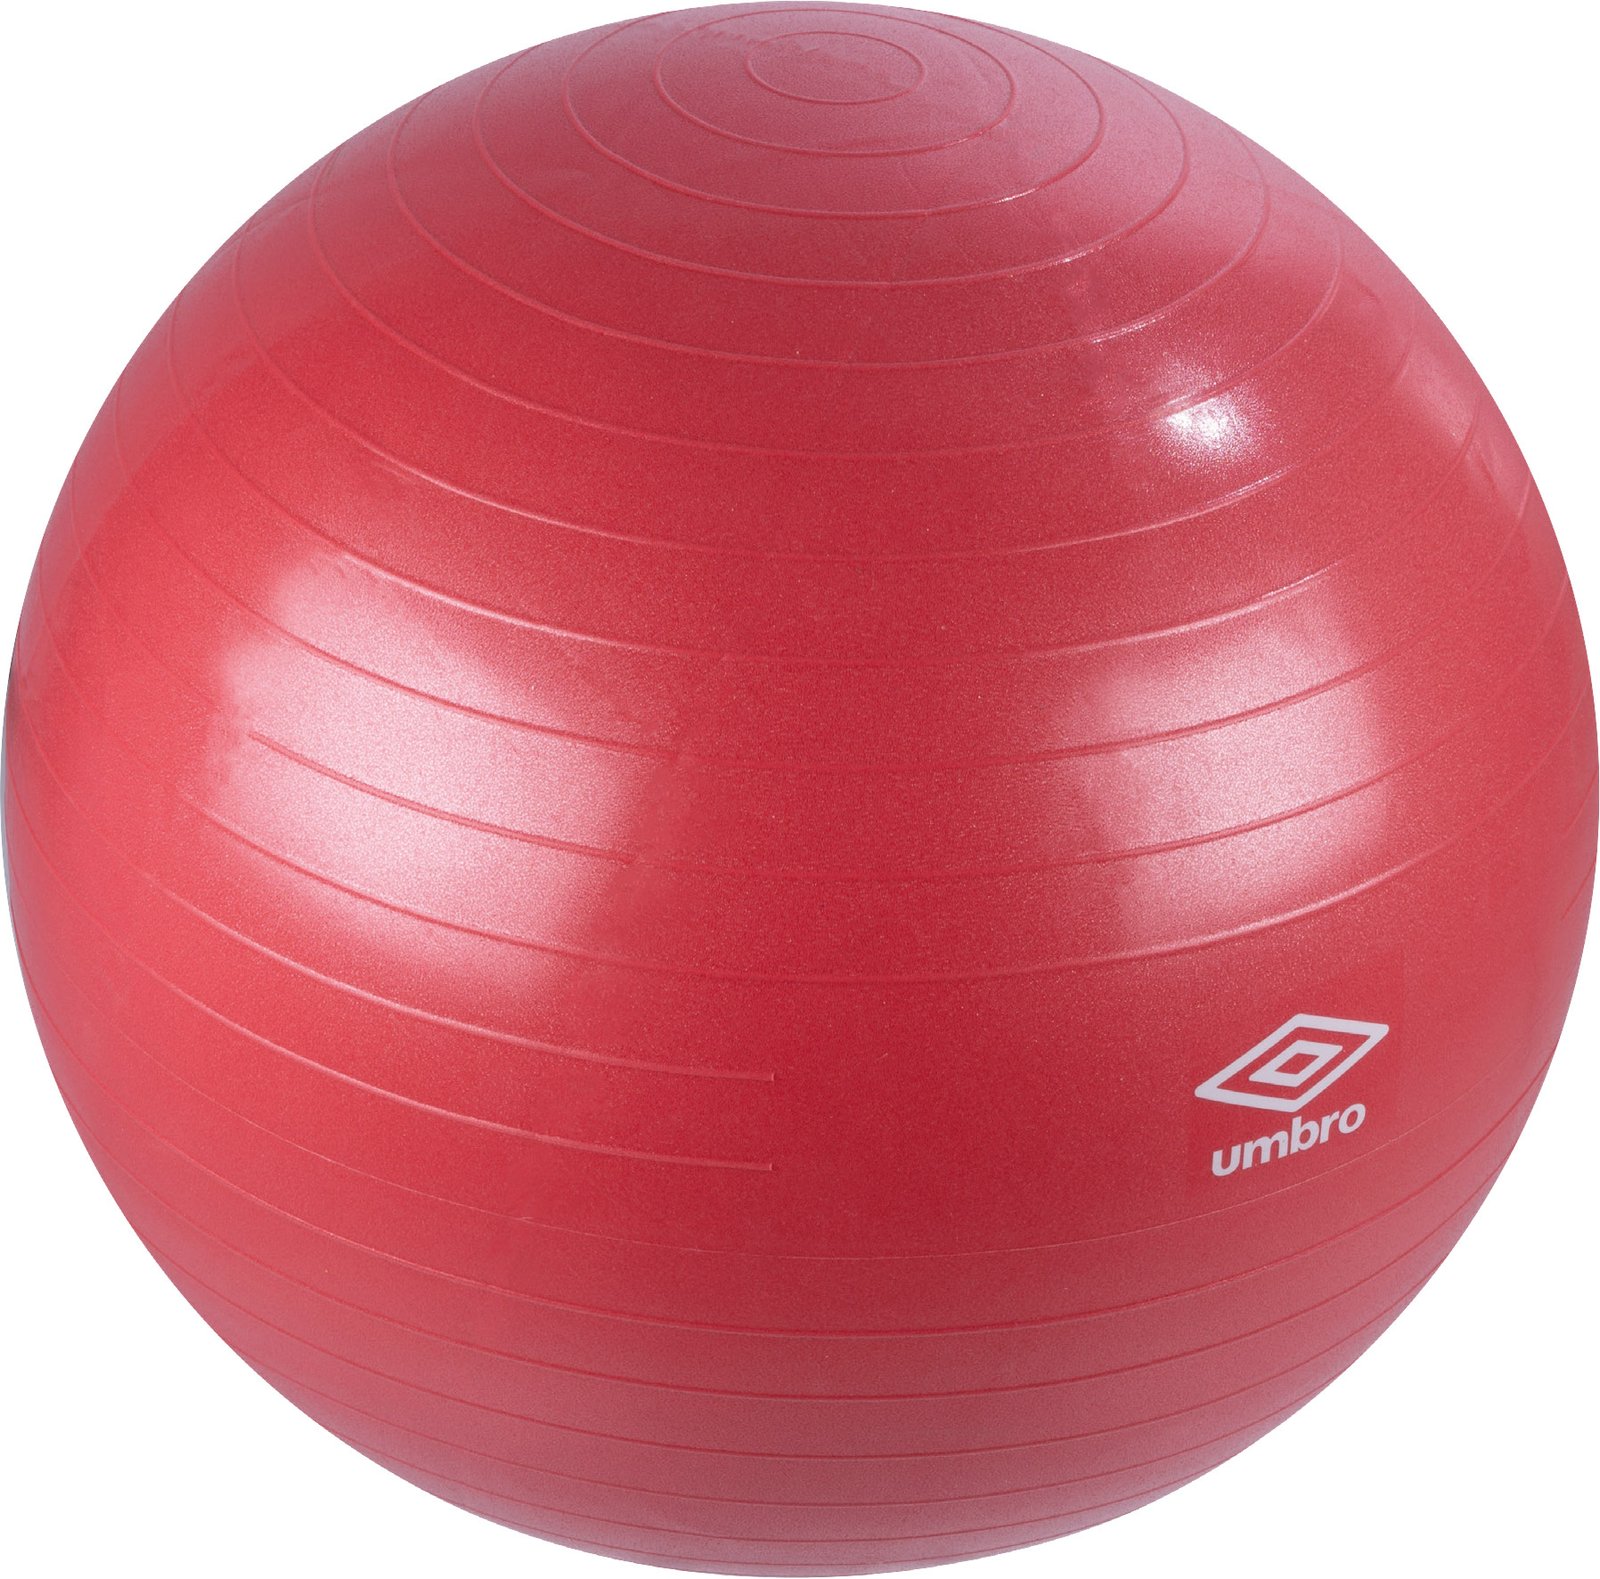 Umbro Pilatesboll Röd 75 cm